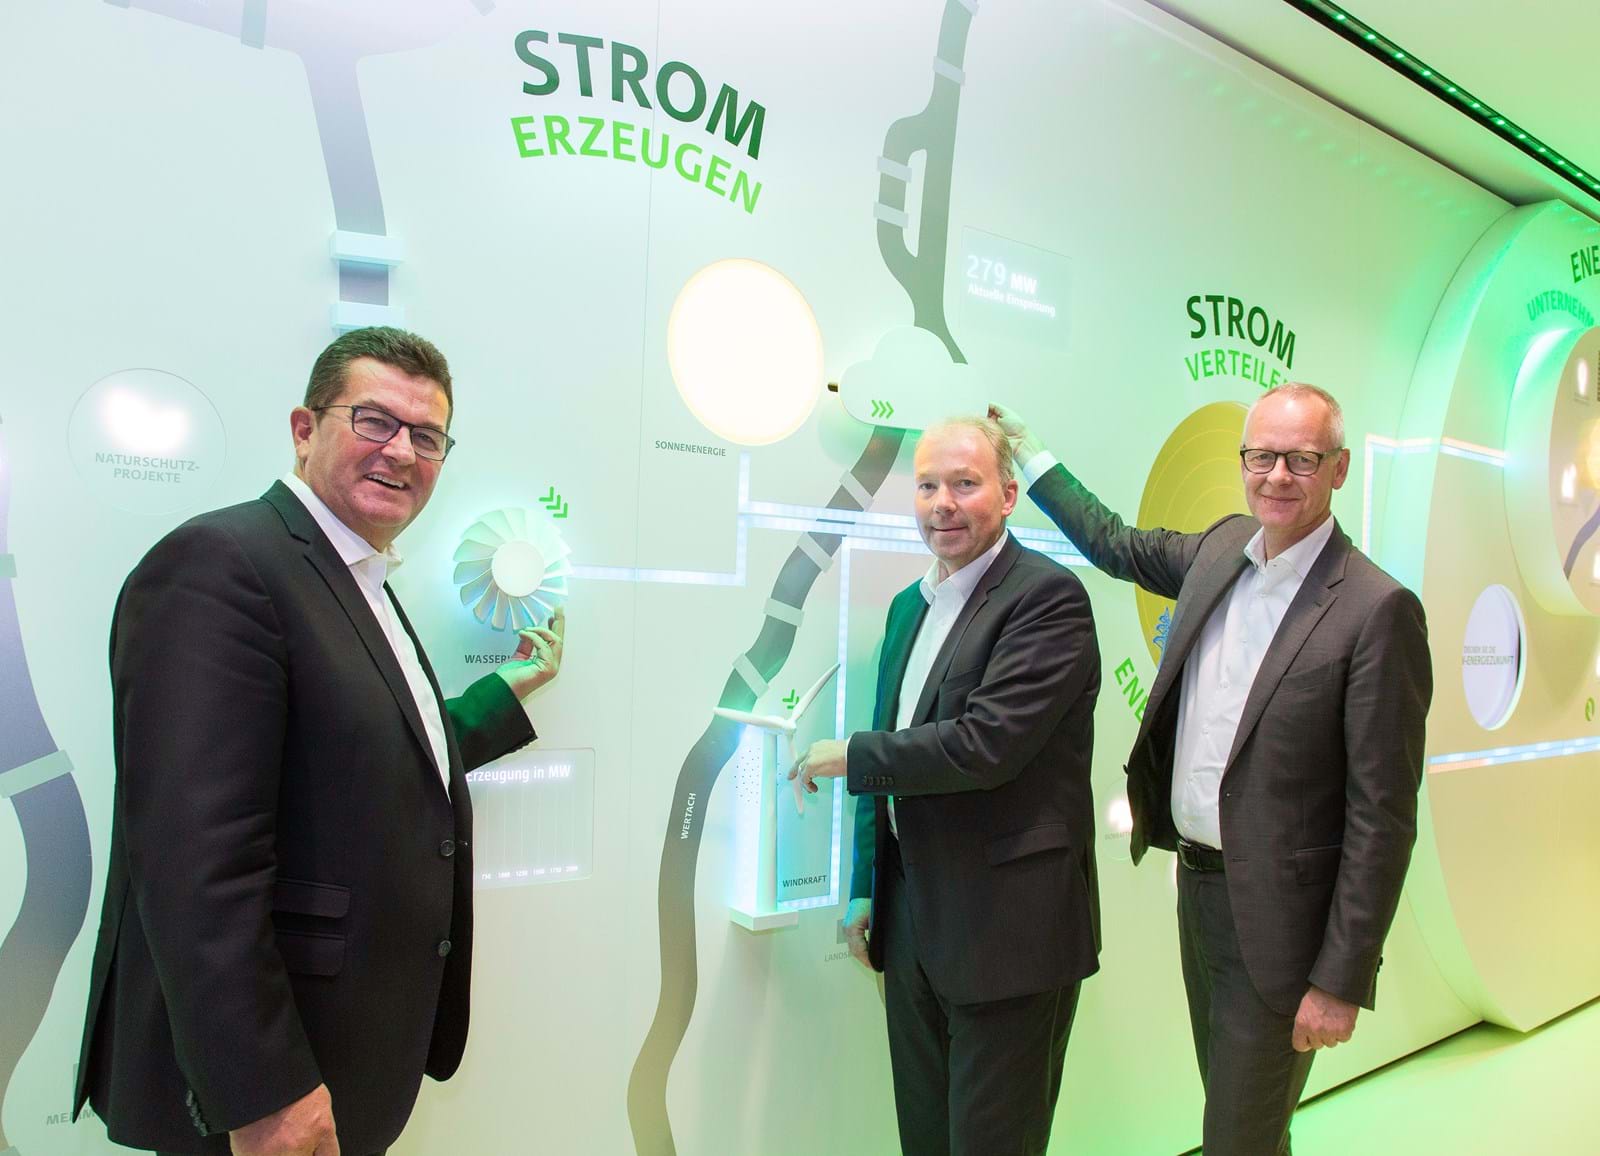 Franz Josef Pschierer, Staatssekretär im Bayerischen Wirtschaftsministerium, und die beiden LEW-Vorstandsmitglieder Norbert Schürmann und Dr. Markus Litpher eröffneten die neue LEW Energiewelt.